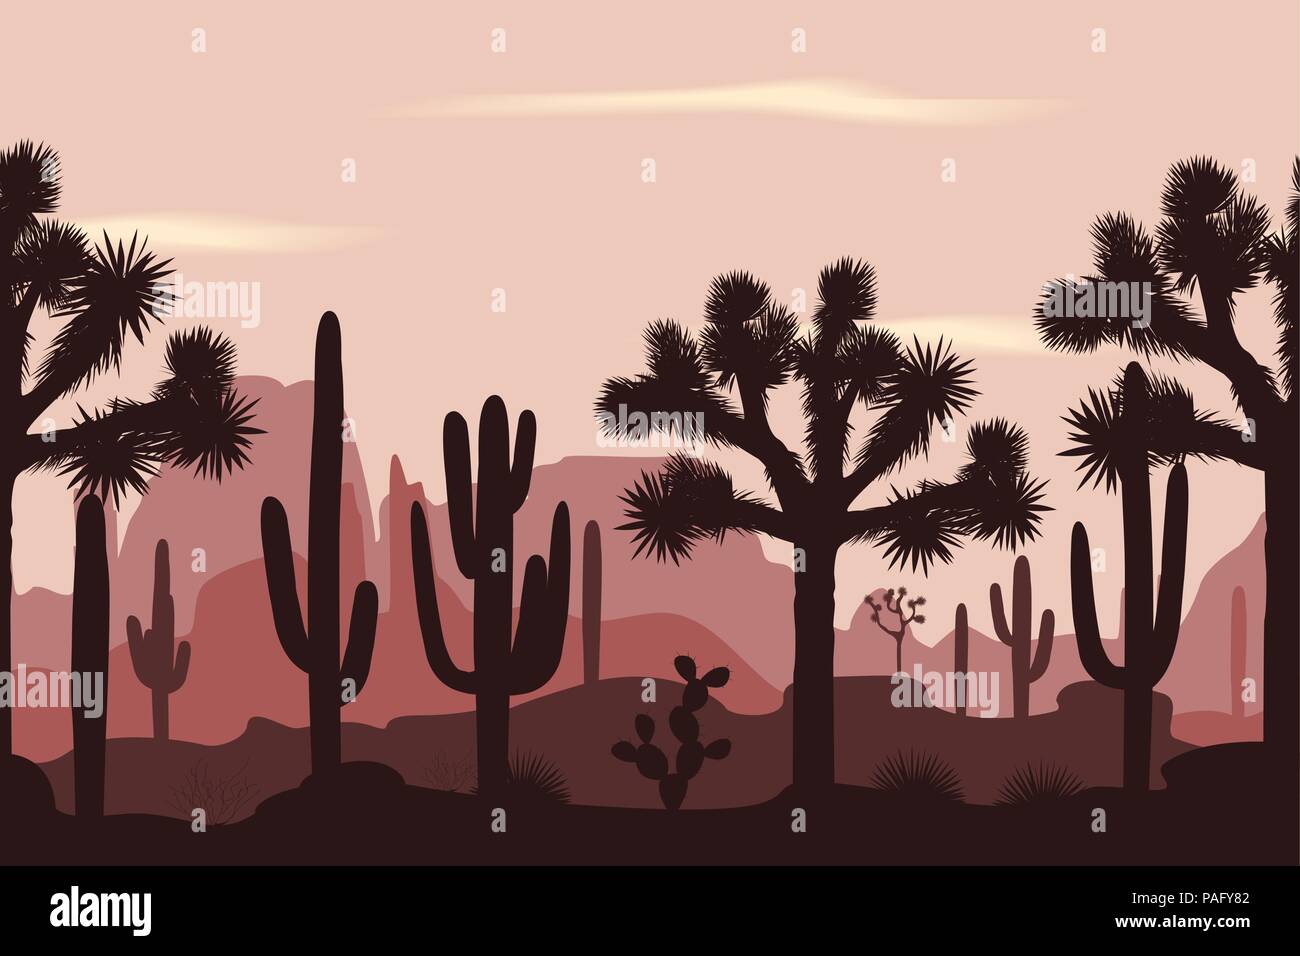 Wüste nahtlose Muster mit Joshua Bäume, Opuntia, Saguaro Kakteen. Die Berge im Hintergrund. Stock Vektor